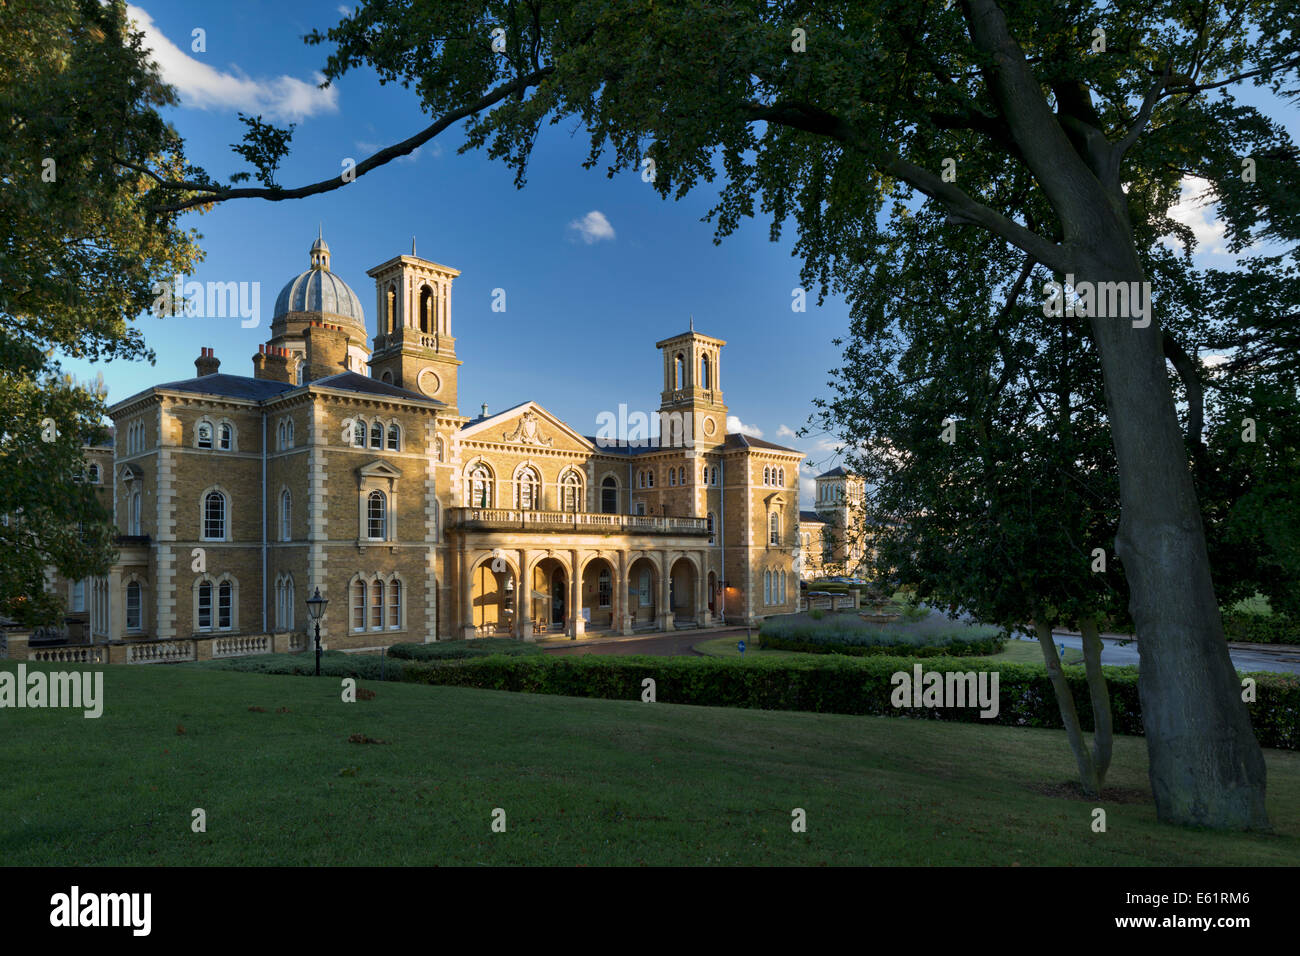 Princess Park Manor, formerly Colney Hatch Asylym, London, UK. Stock Photo